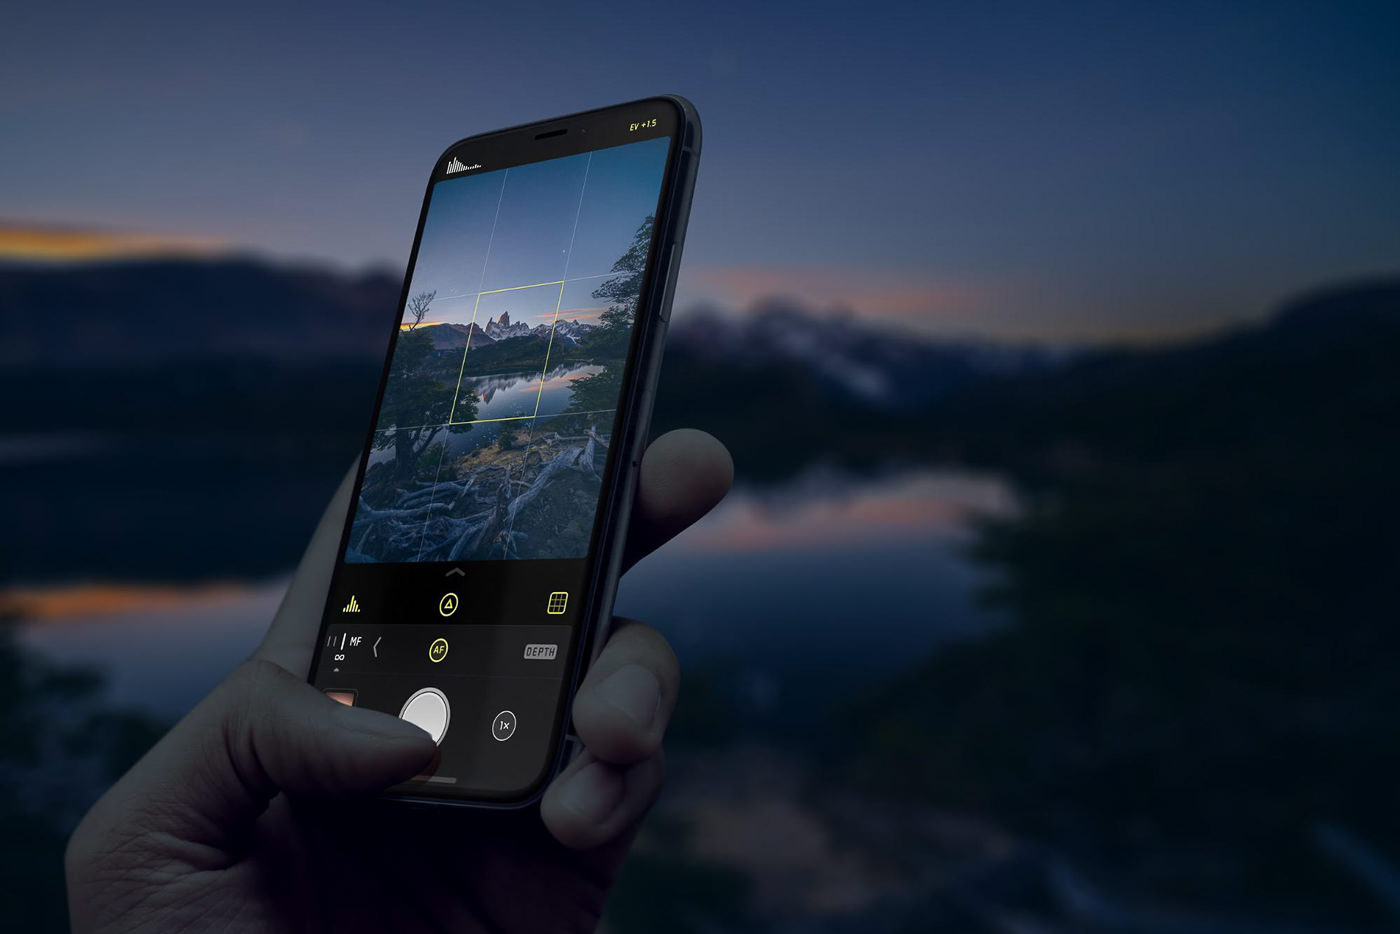 Top Iphone Photo Editing Apps In 2020 Vsco Vs Snapseed Vs